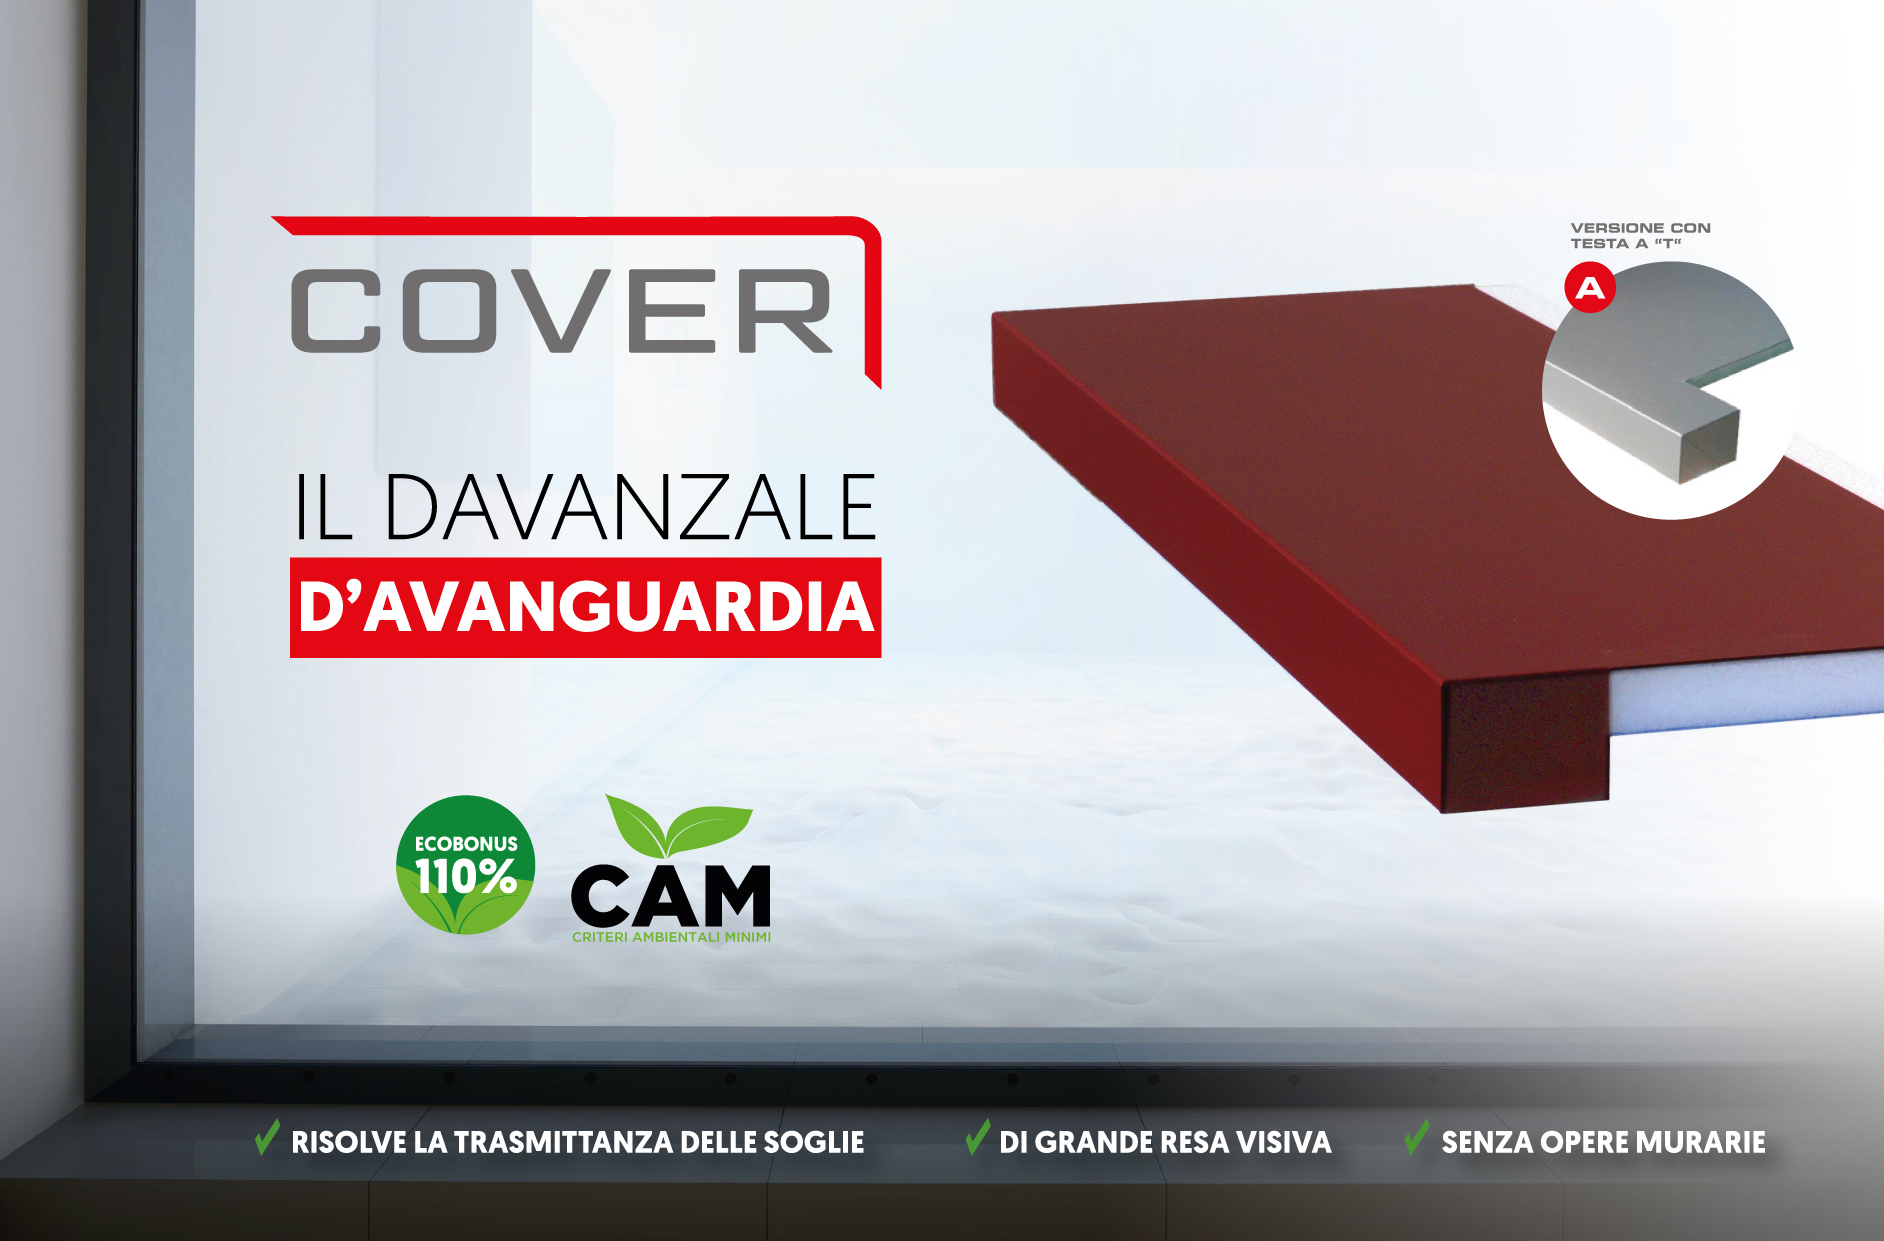 Cover, il copri davanzale isolante 110% CAM - De Faveri srl - monoblocchi  finestra - sistemi termo-isolanti